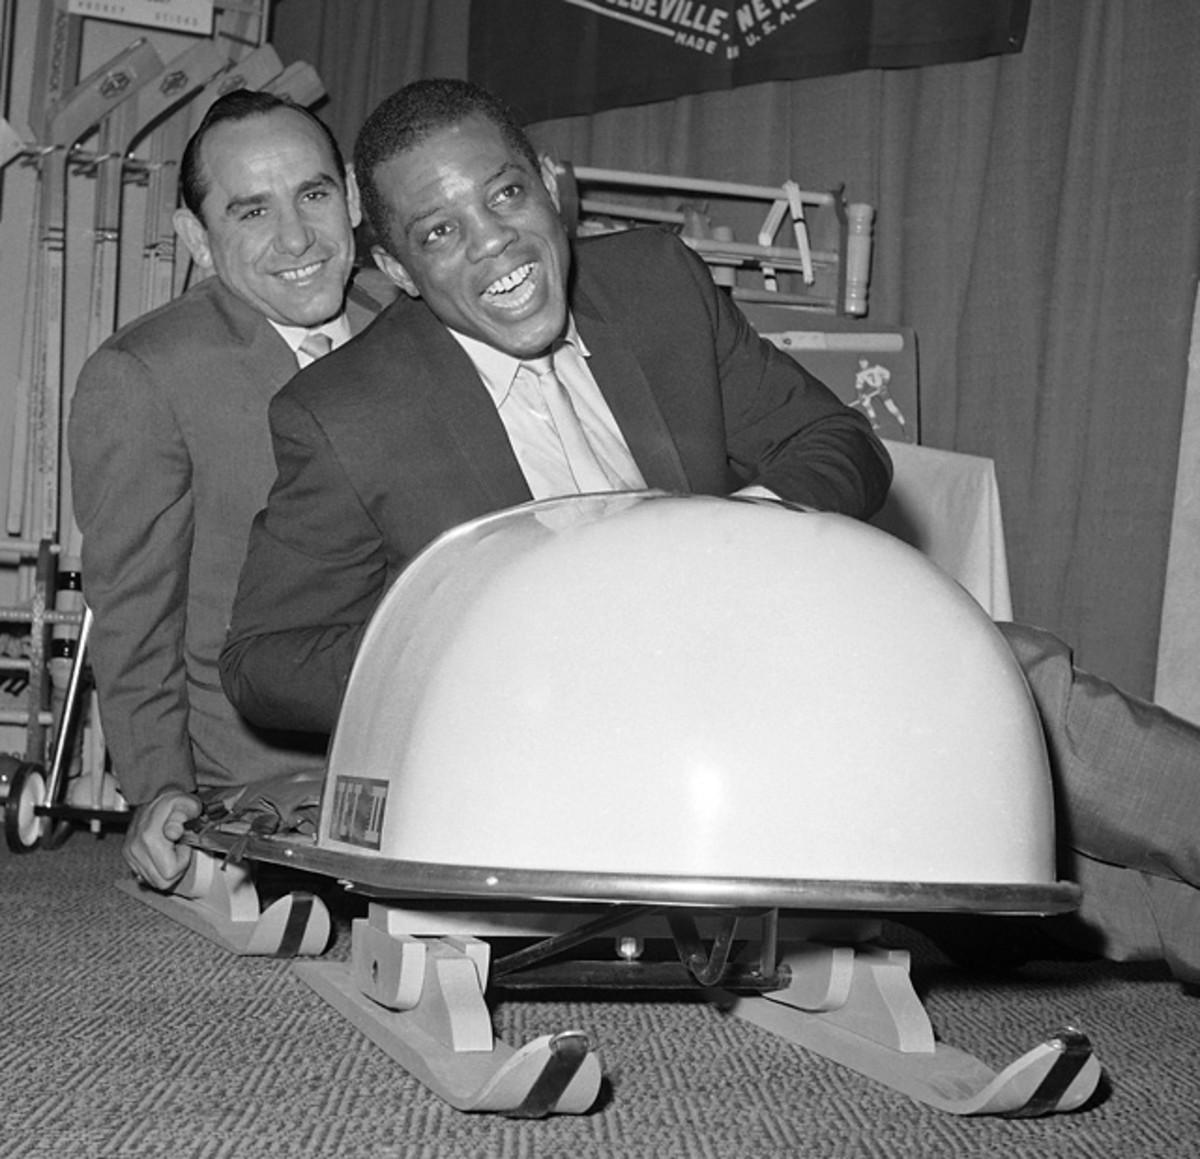 Willie Mays and Yogi Berra